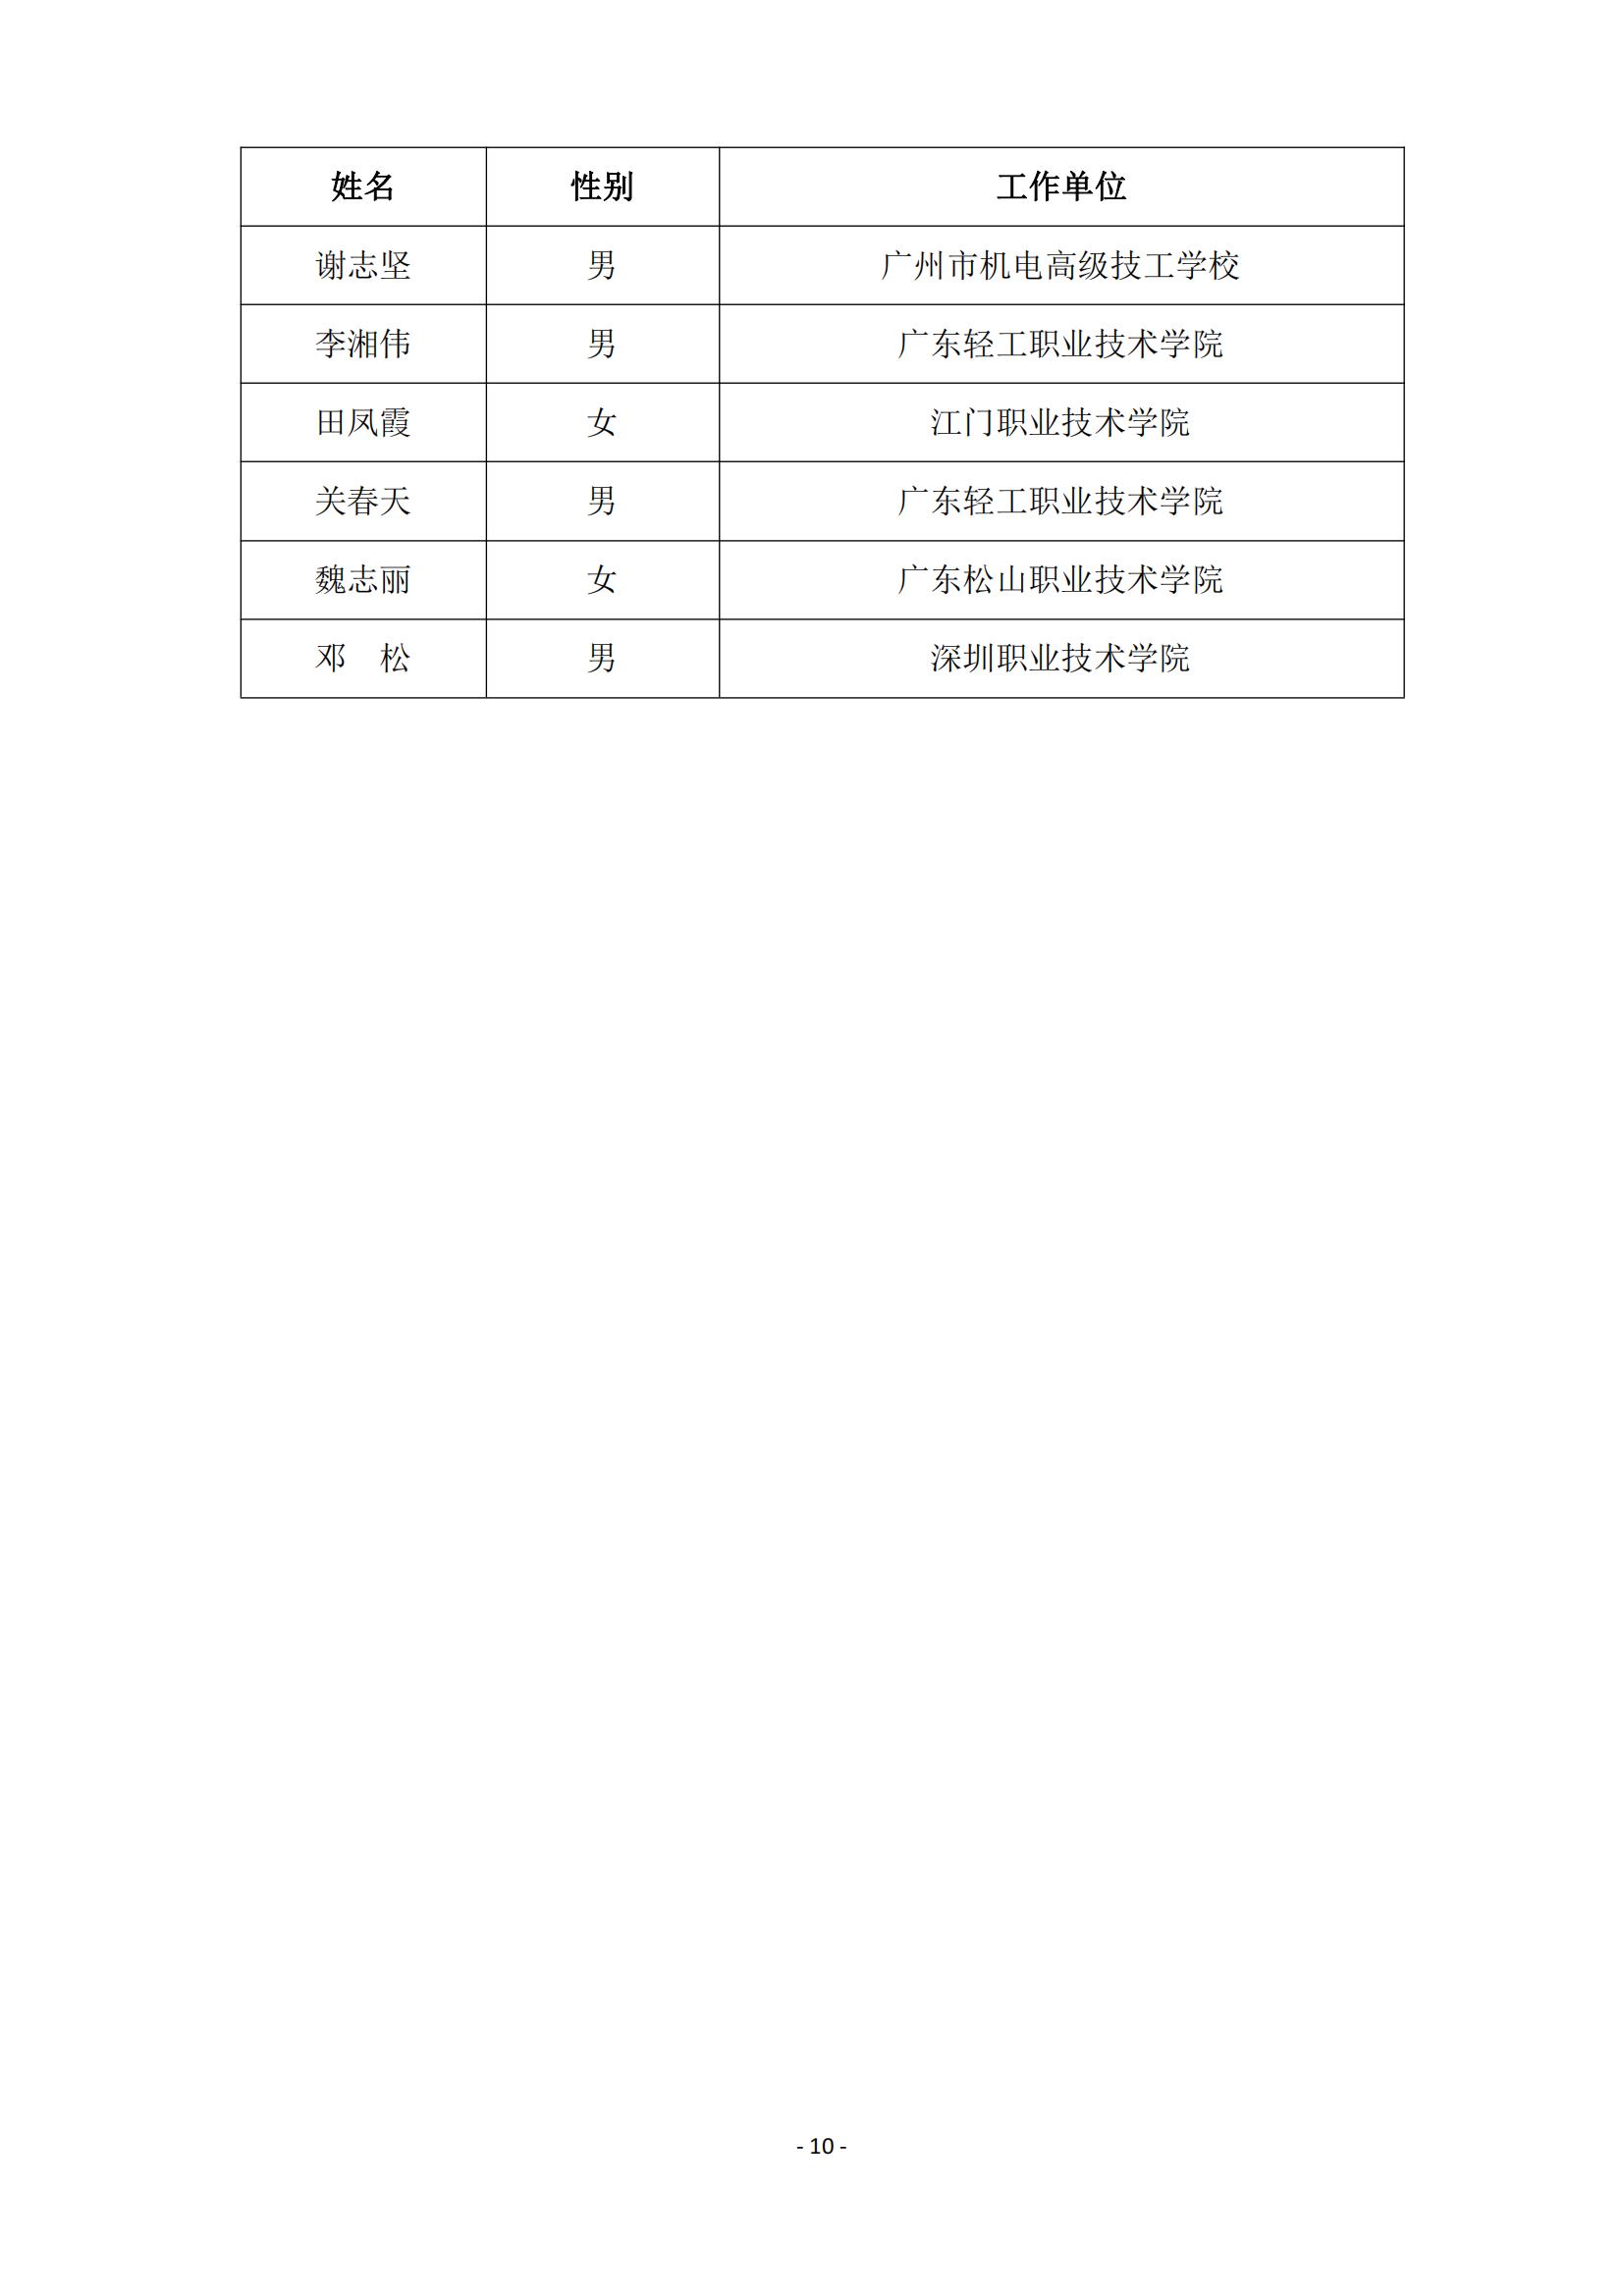 2015 年中国技能大赛--广东省机电一体化职业技能竞赛_09.jpg